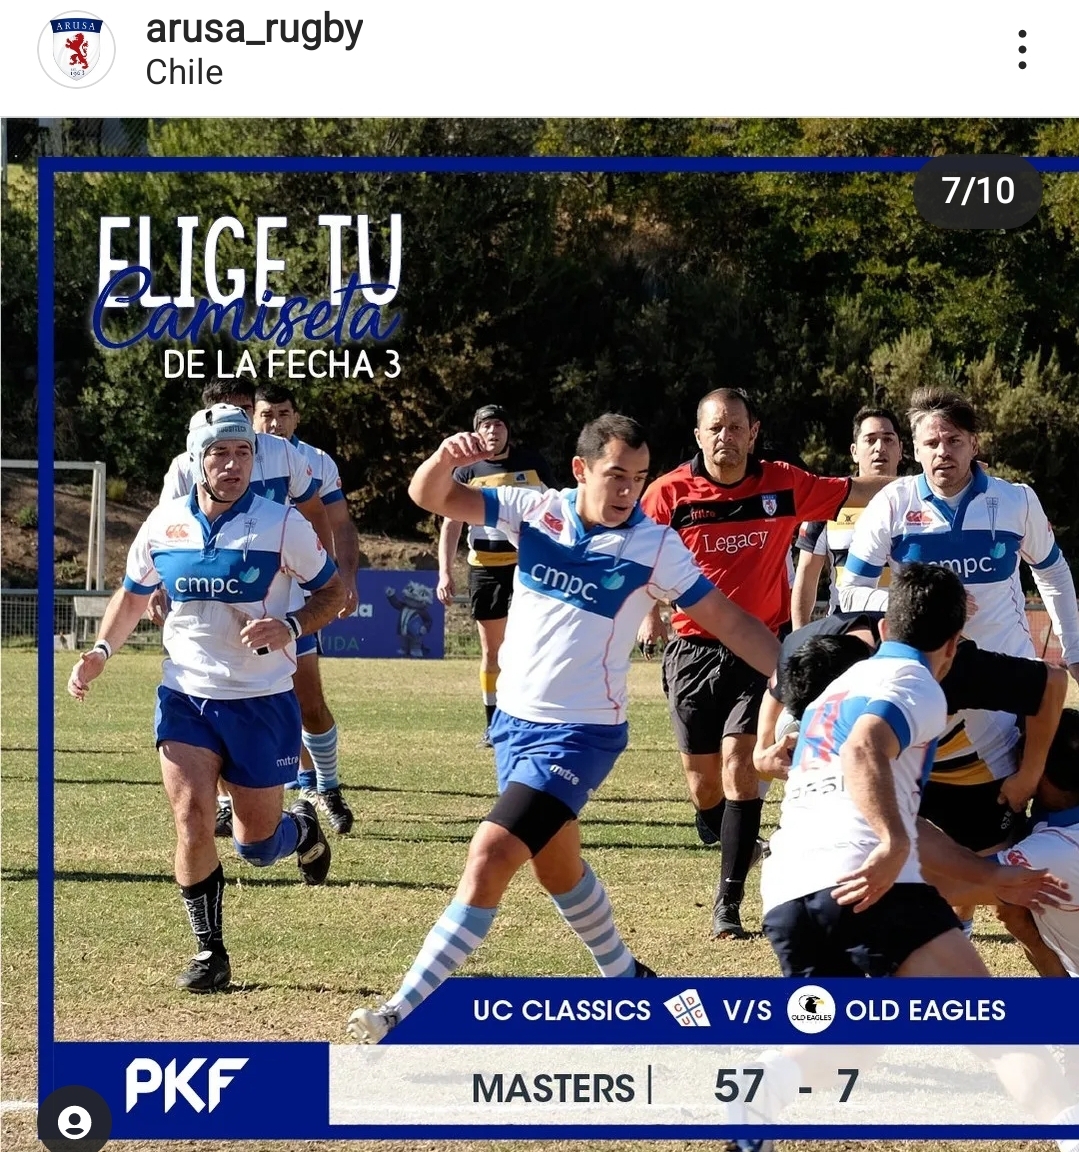 ¡Seguimos apoyando al Rugby en Chile!